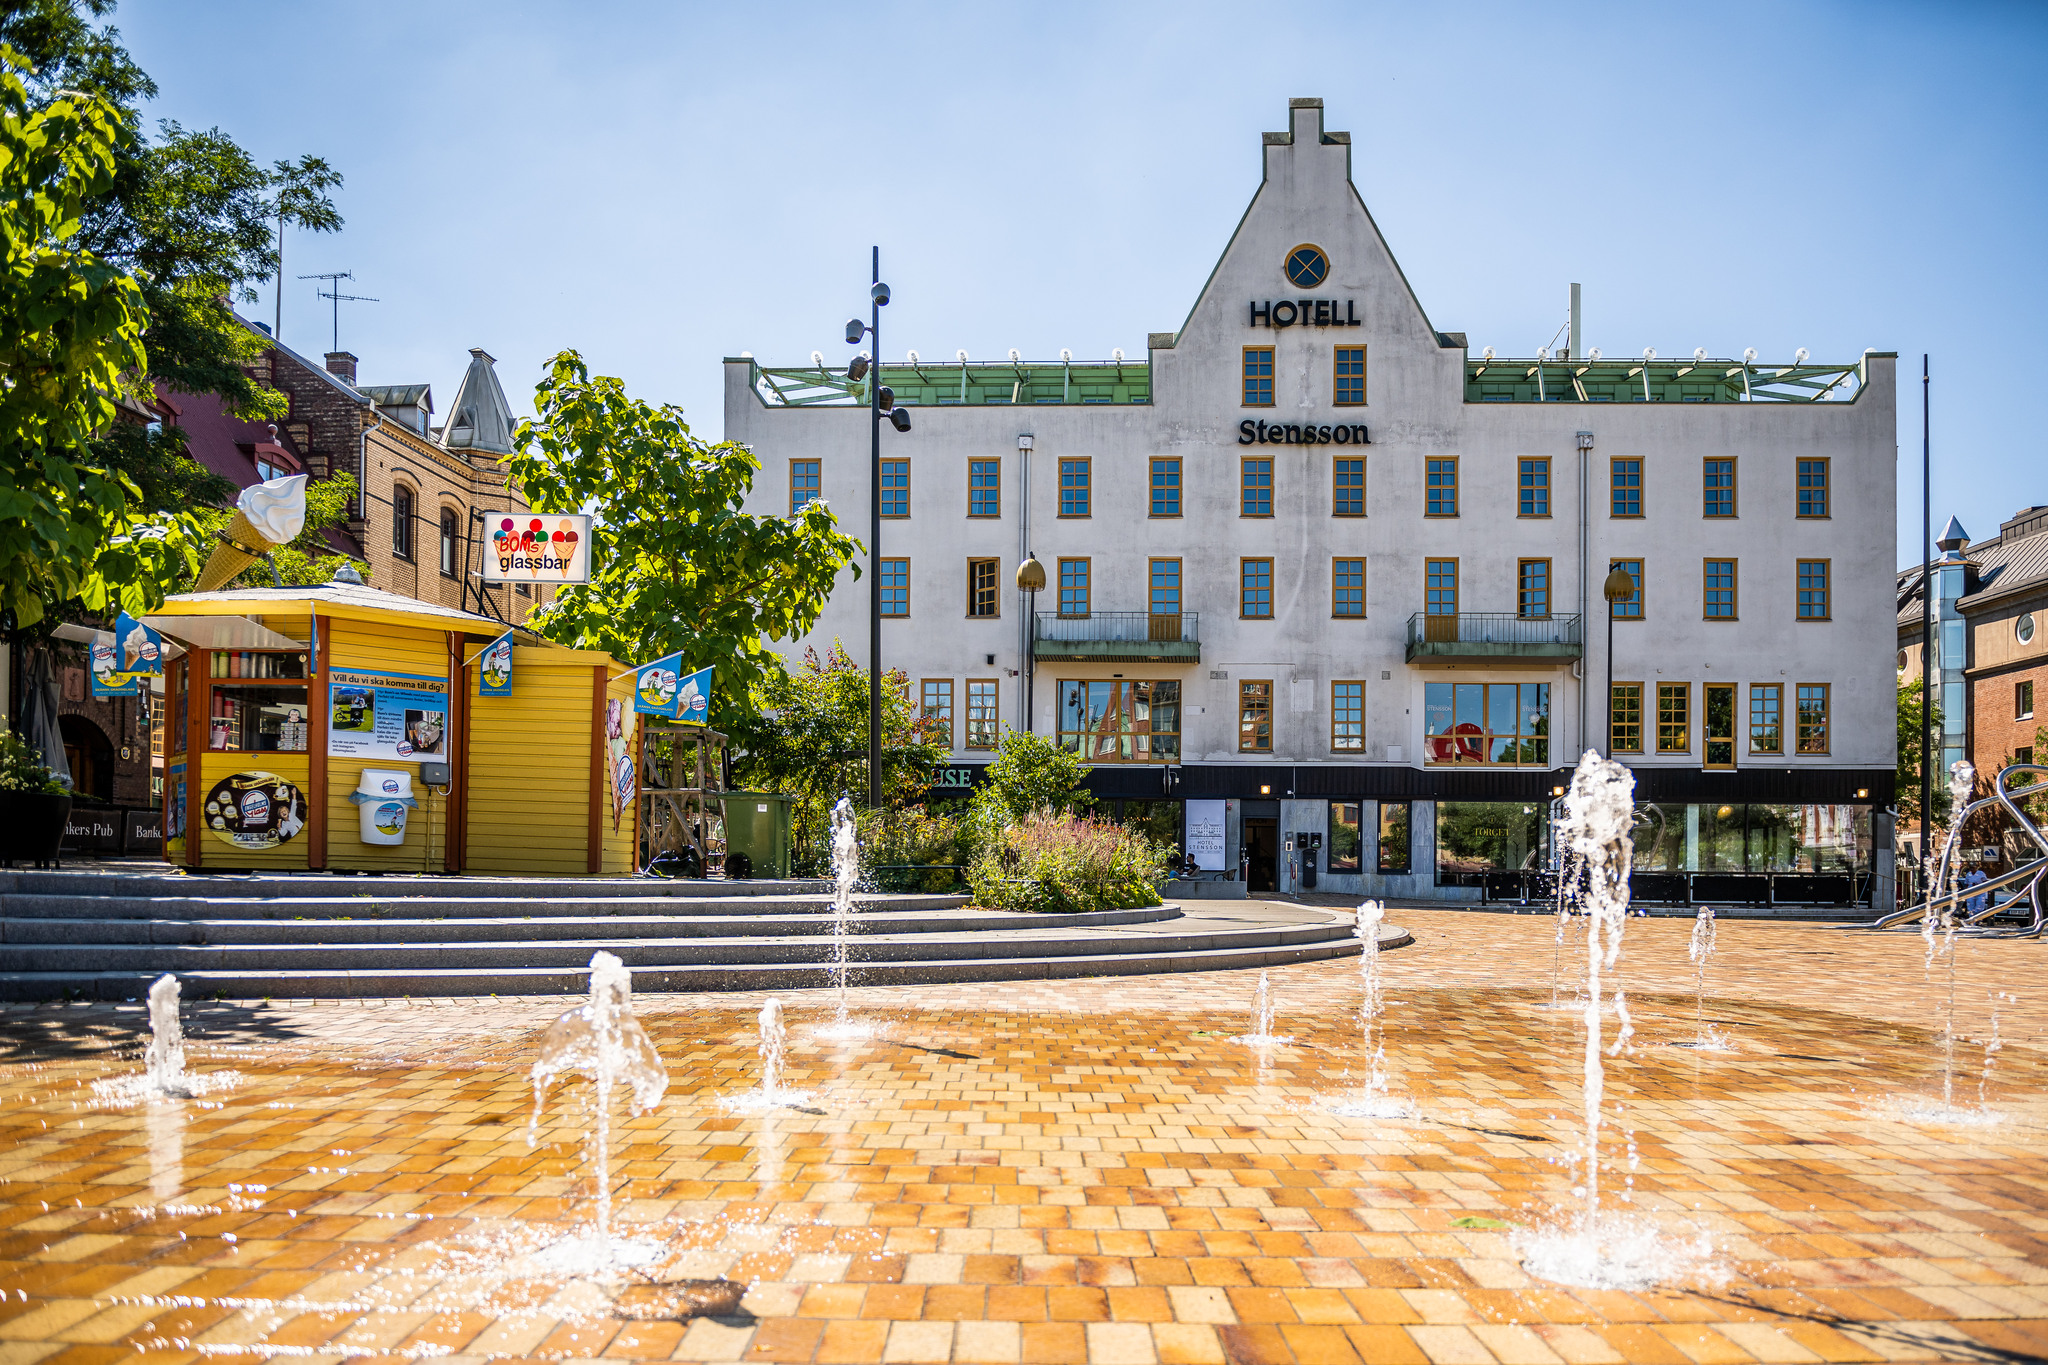 Stora torg i Eslöv med fontän och hotellet i bakgrunden.